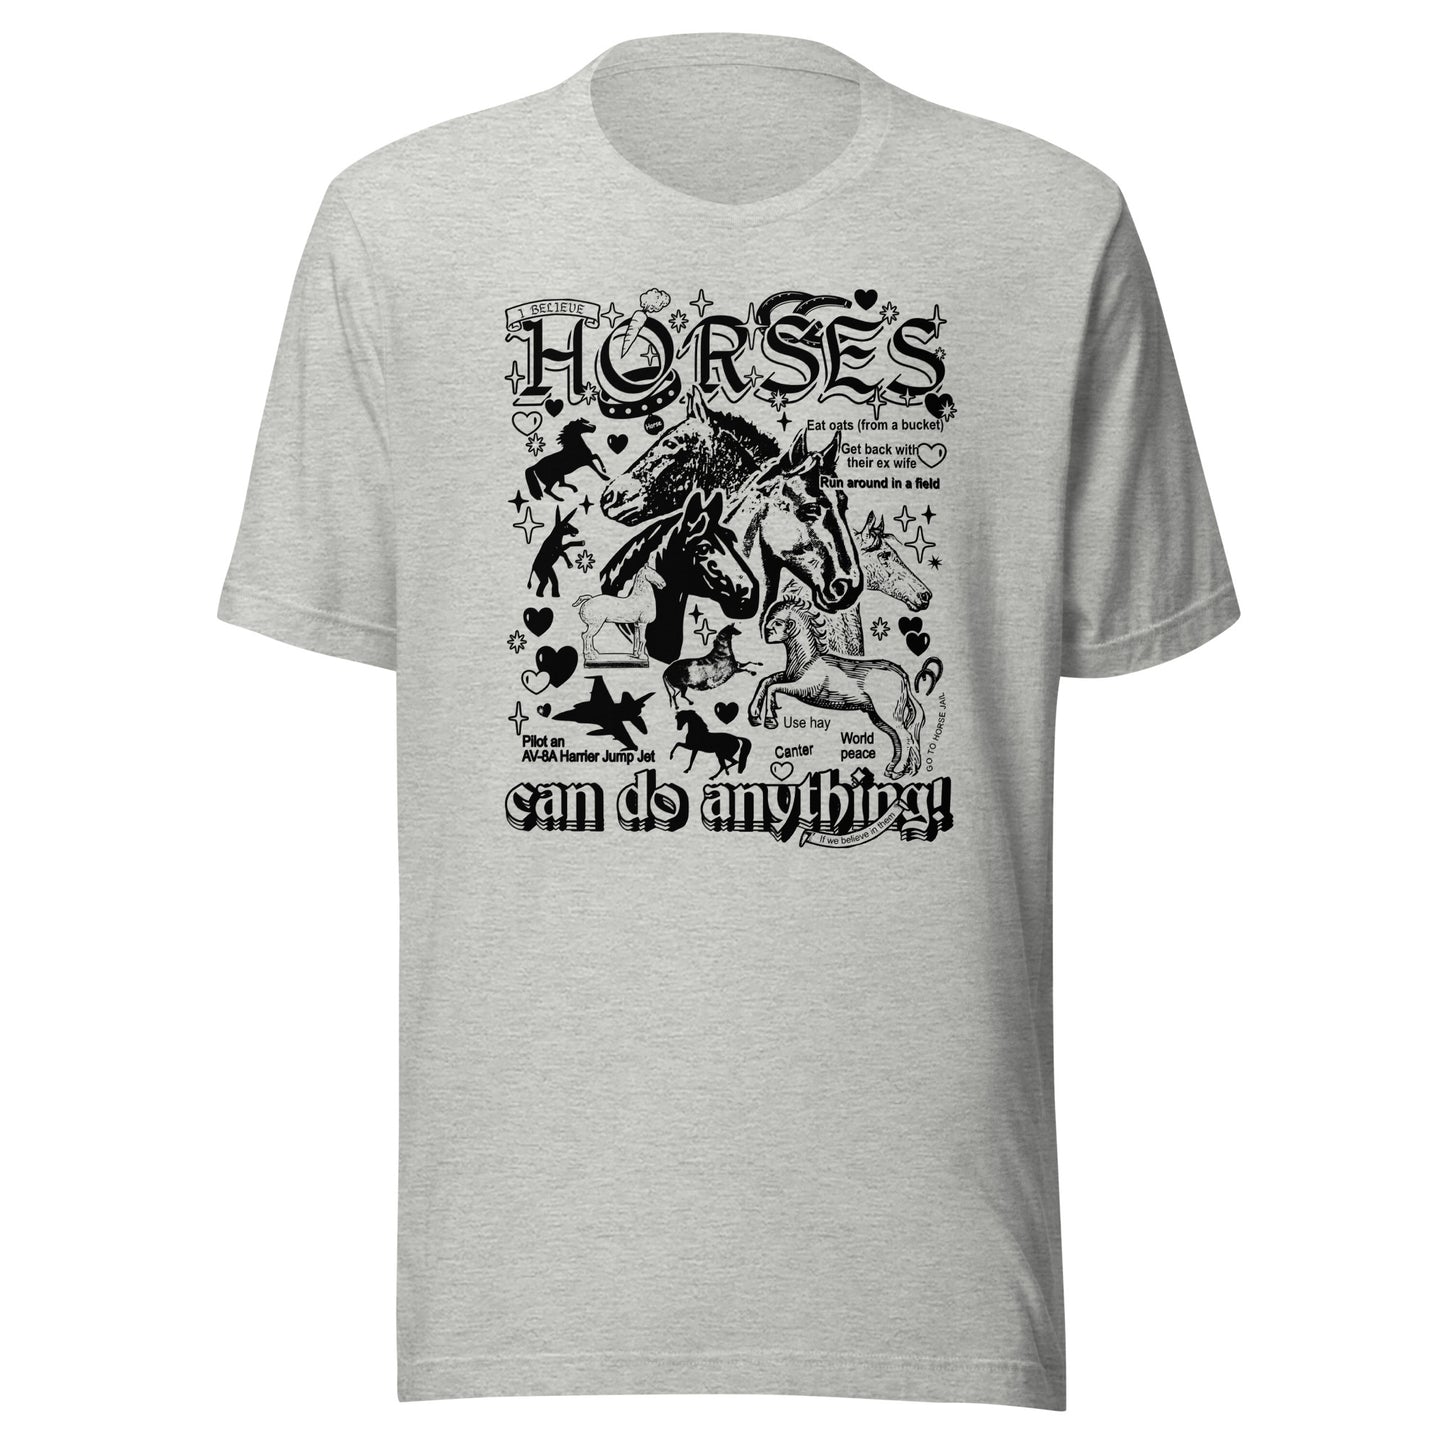 "Horses" Unisex t-shirt